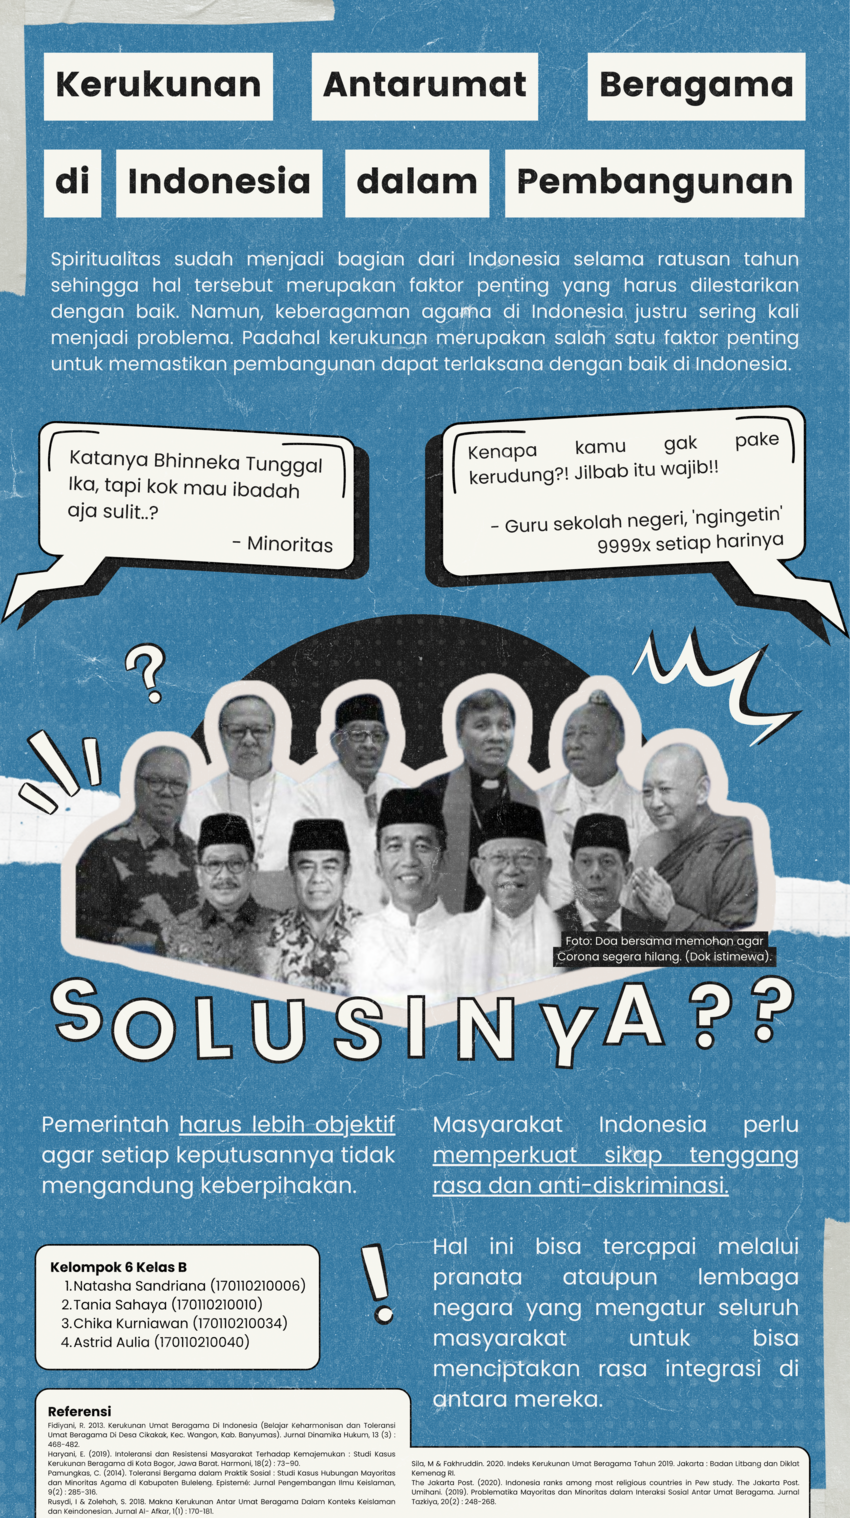 Pdf Kerukunan Antarumat Beragama Di Indonesia Dalam Pembangunan